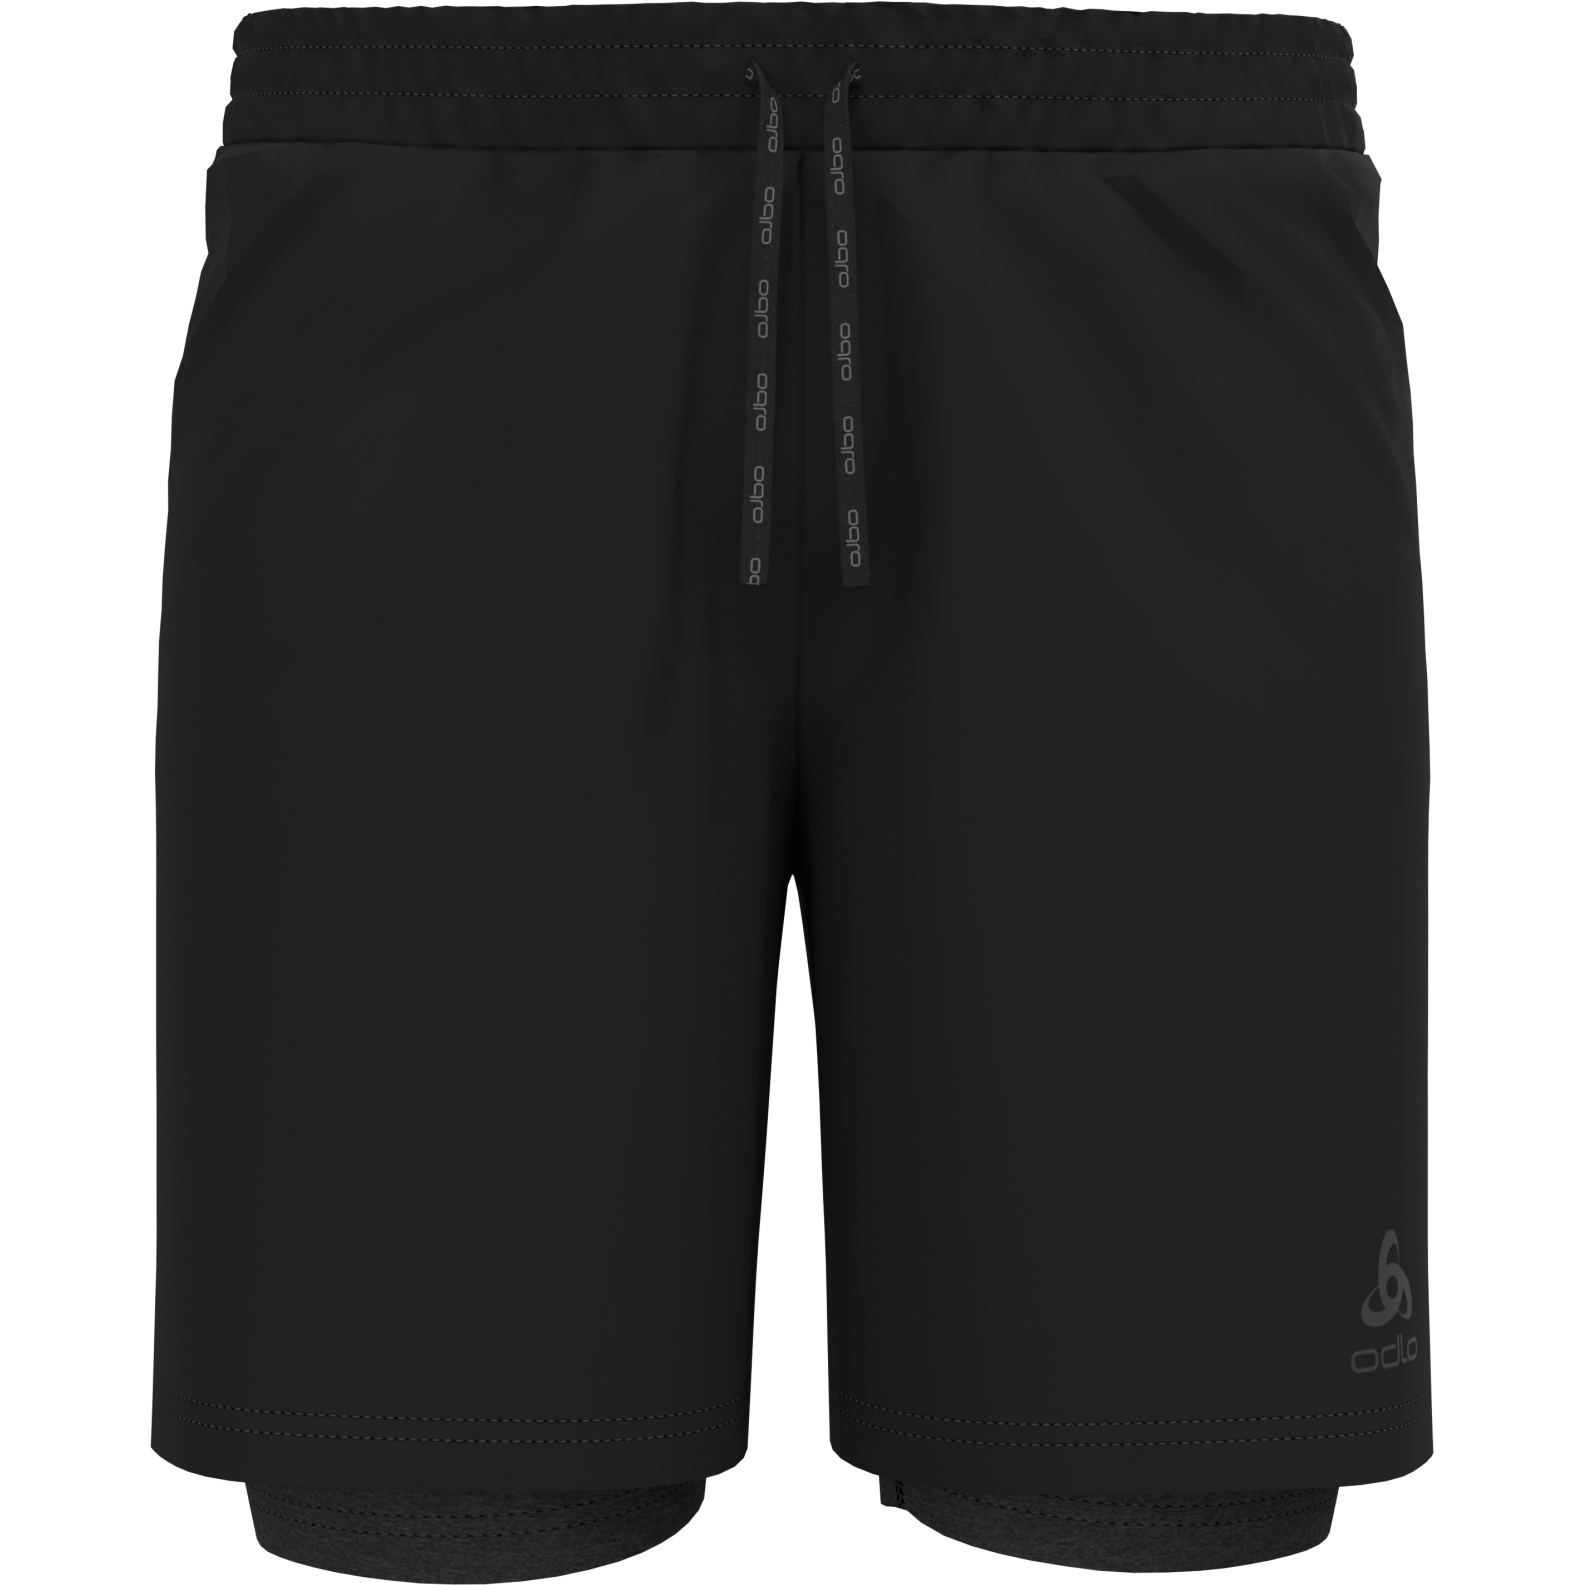 Produktbild von Odlo Active 365 7 Inch 2-in-1 Shorts Herren - schwarz